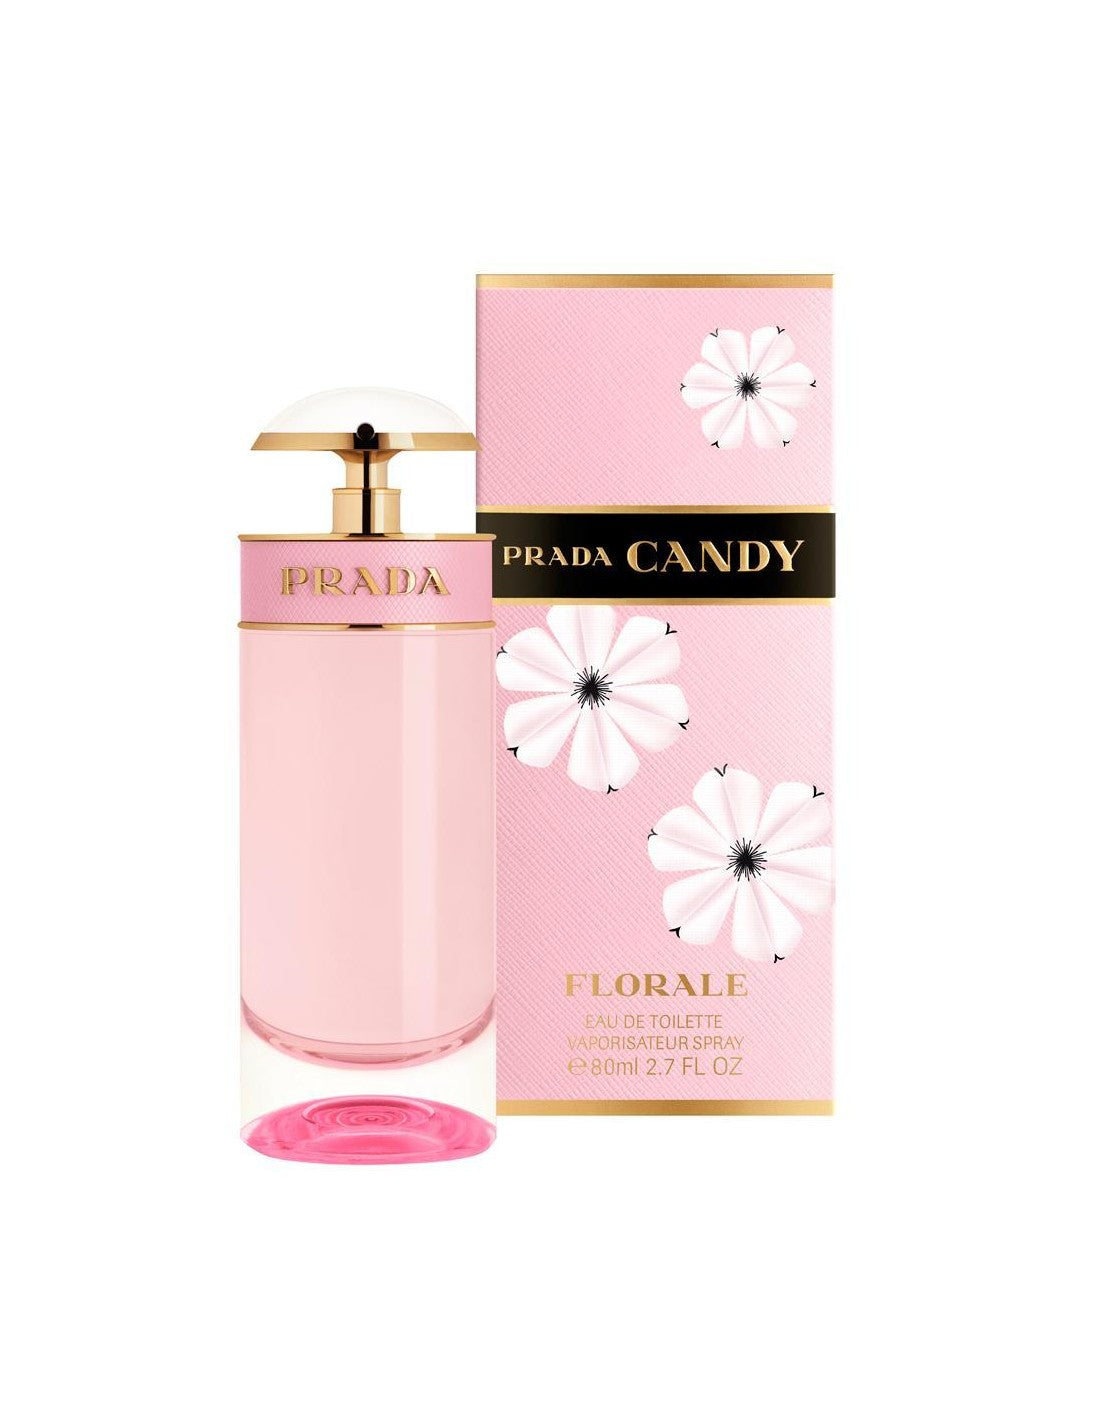 Prada Candy Florale Eau De Toilette - Jasmine Parfums- [ean]